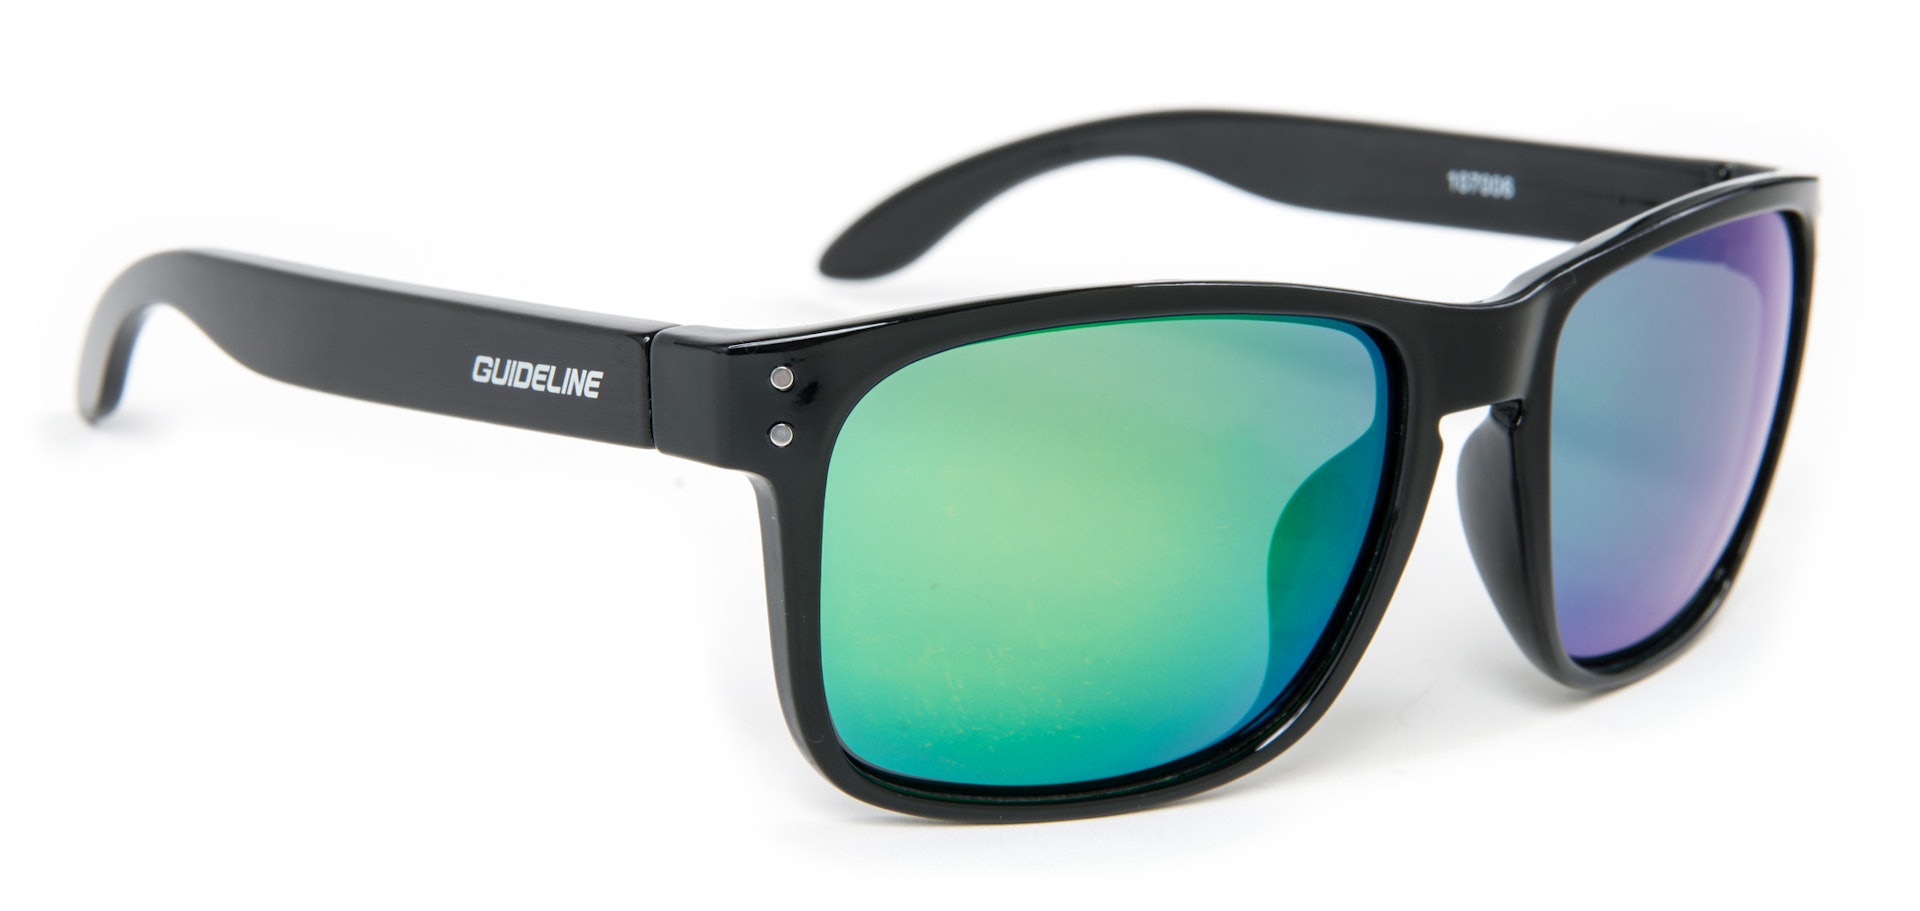 Eyewear - Polarized sunglasses - UV400 Protection